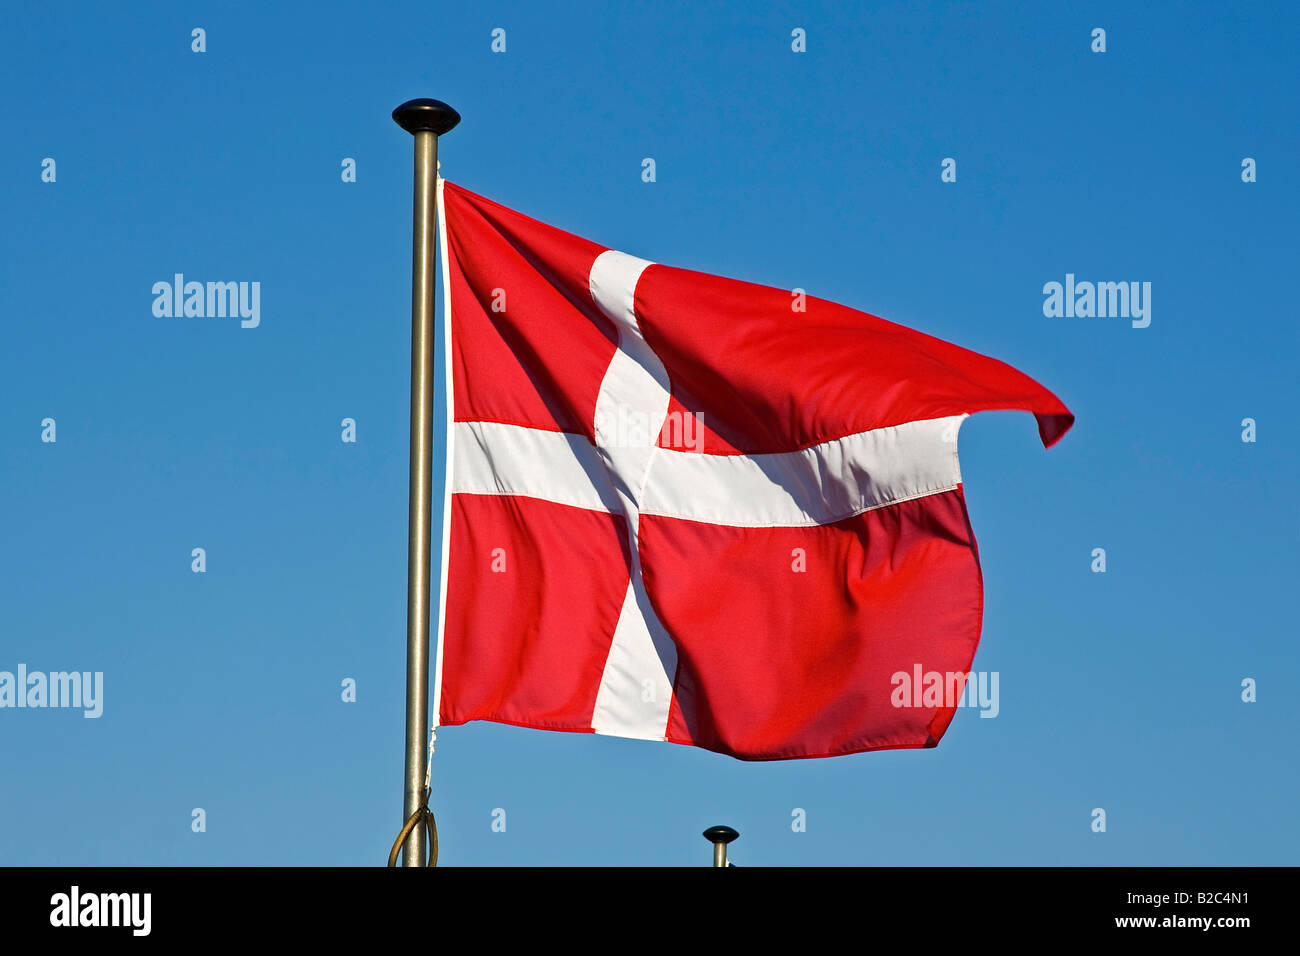 Dänische Flagge, Flagge Dänemarks Dannebrog, flattern im Wind auf eine Fahnenstange Stockfoto